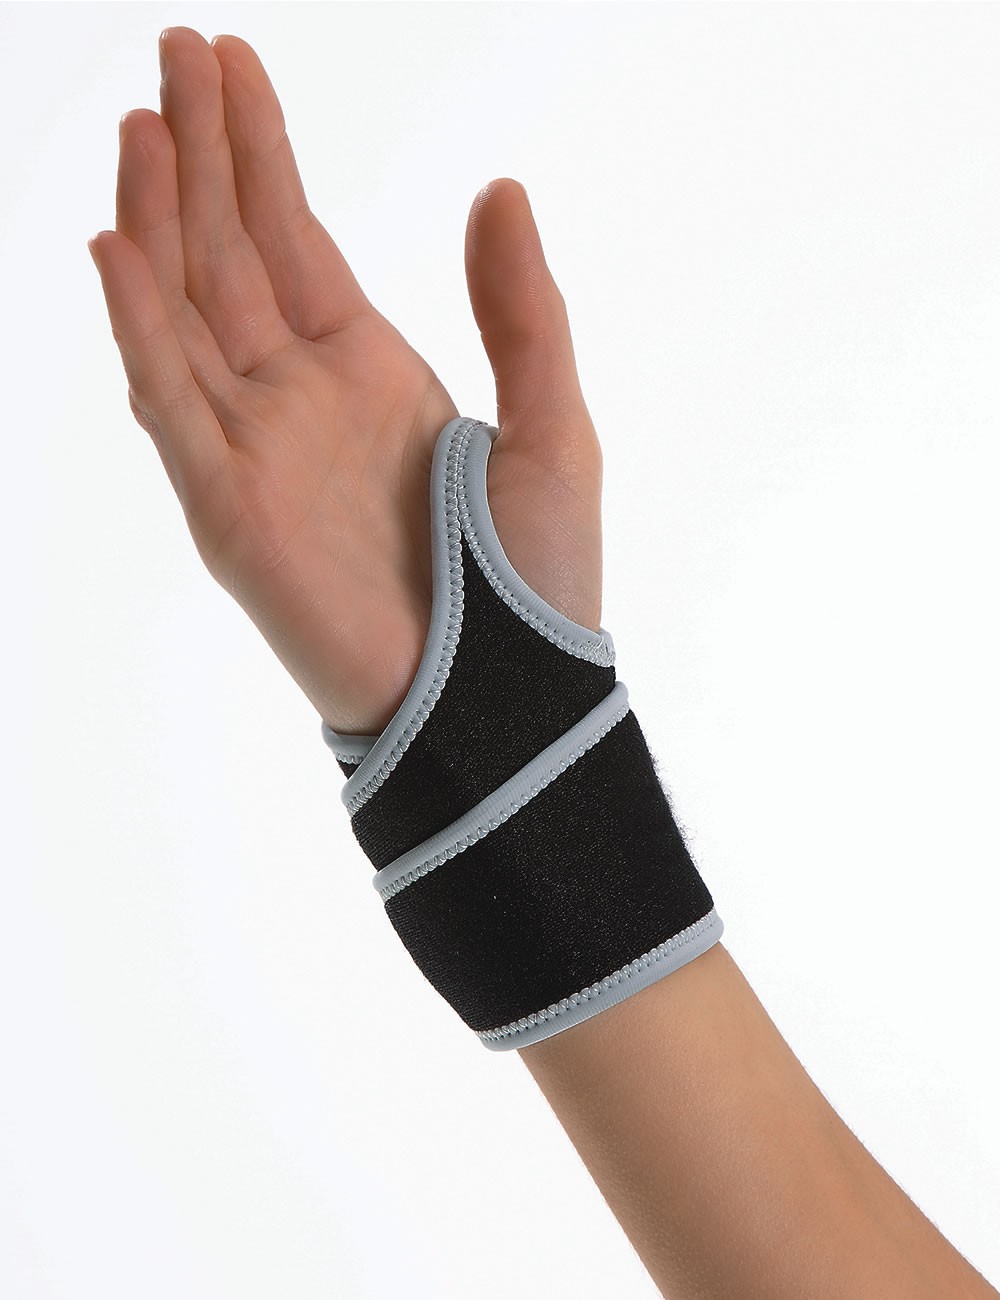 PK02 Simple wrist brace